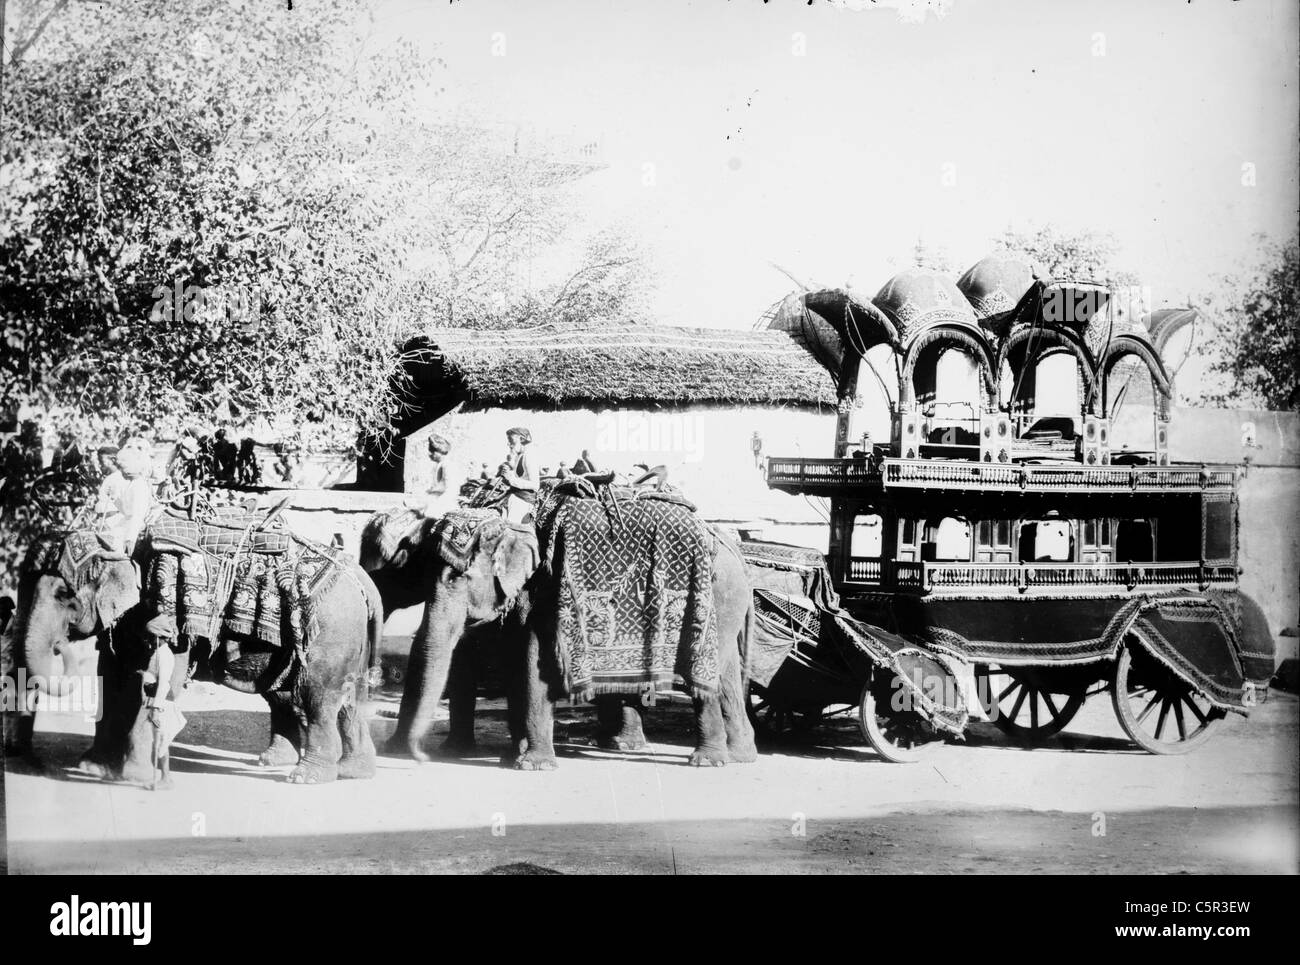 Quattro gli elefanti tirando il carrello, India Foto Stock